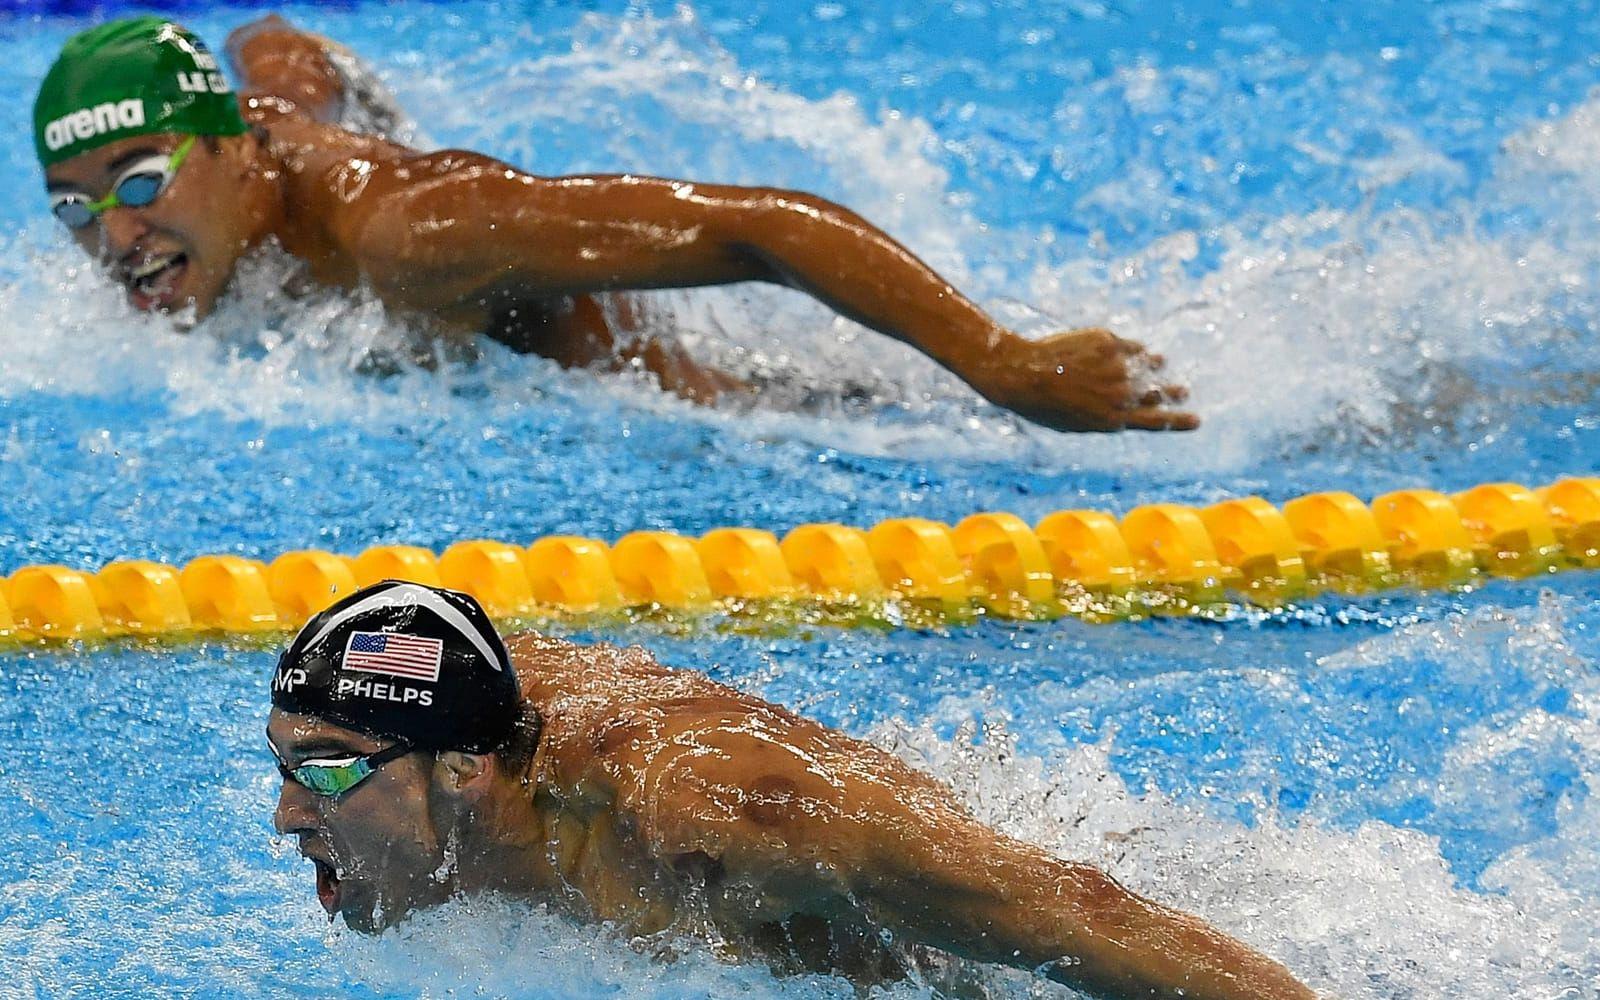 Le Clos slagen av Phelps i 200 meter fjäril. Foto: TT